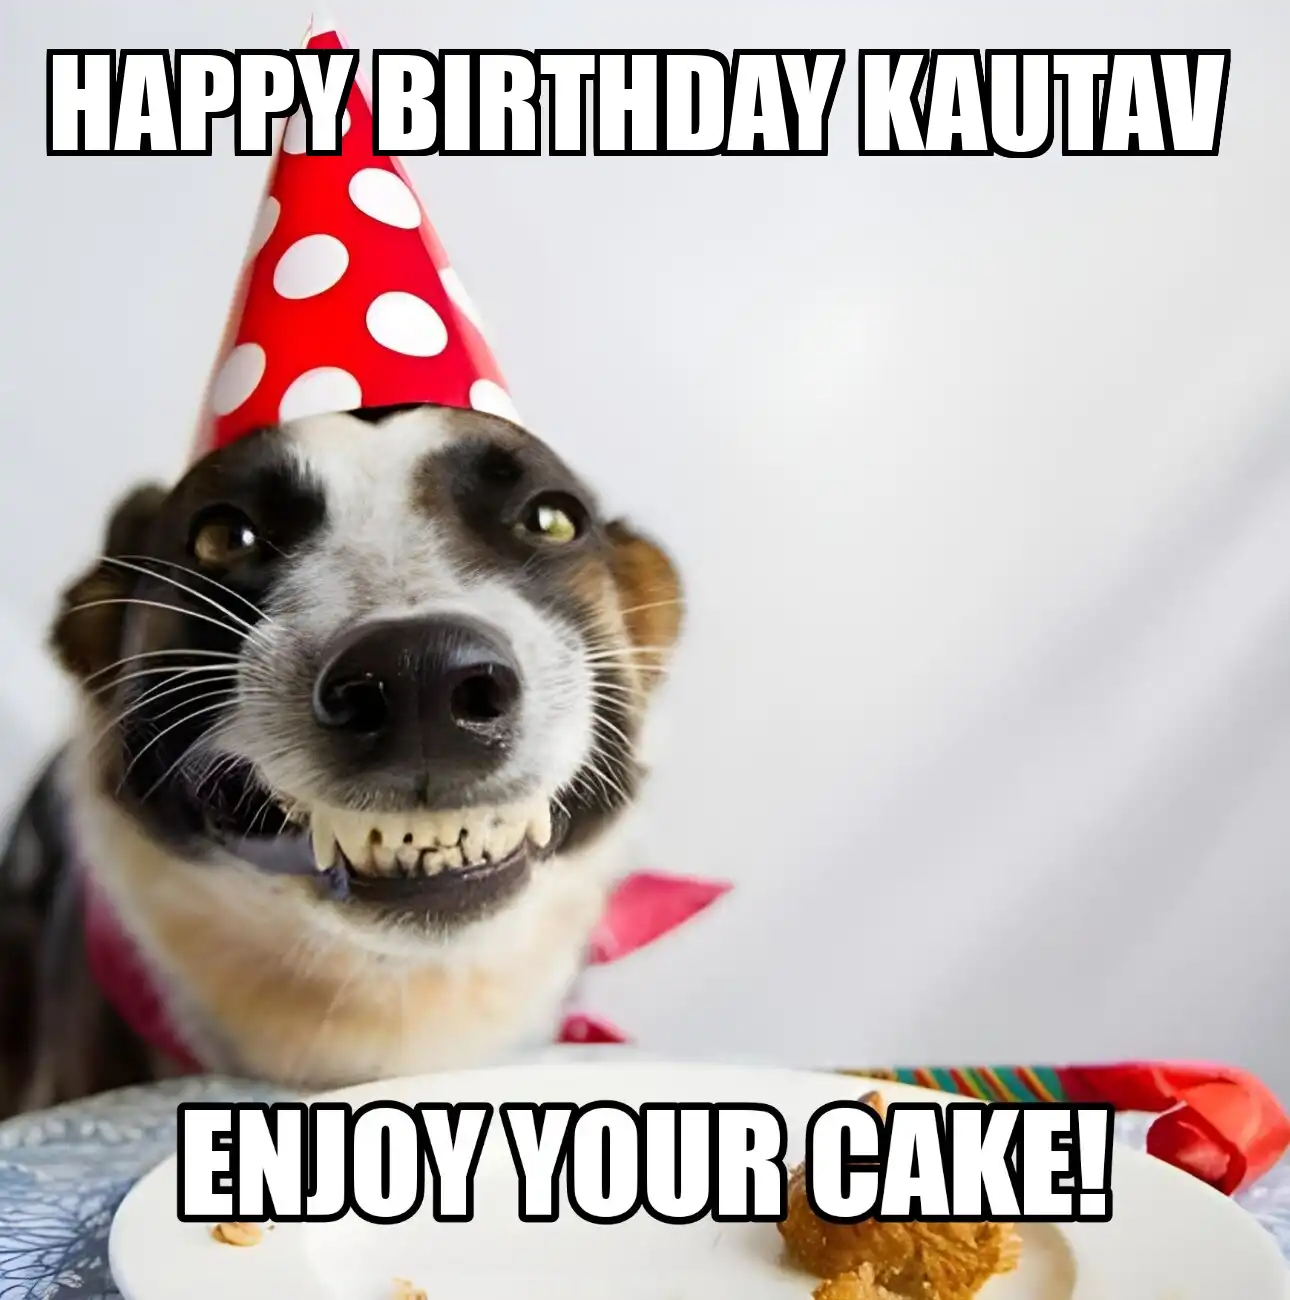 Happy Birthday Kautav Enjoy Your Cake Dog Meme